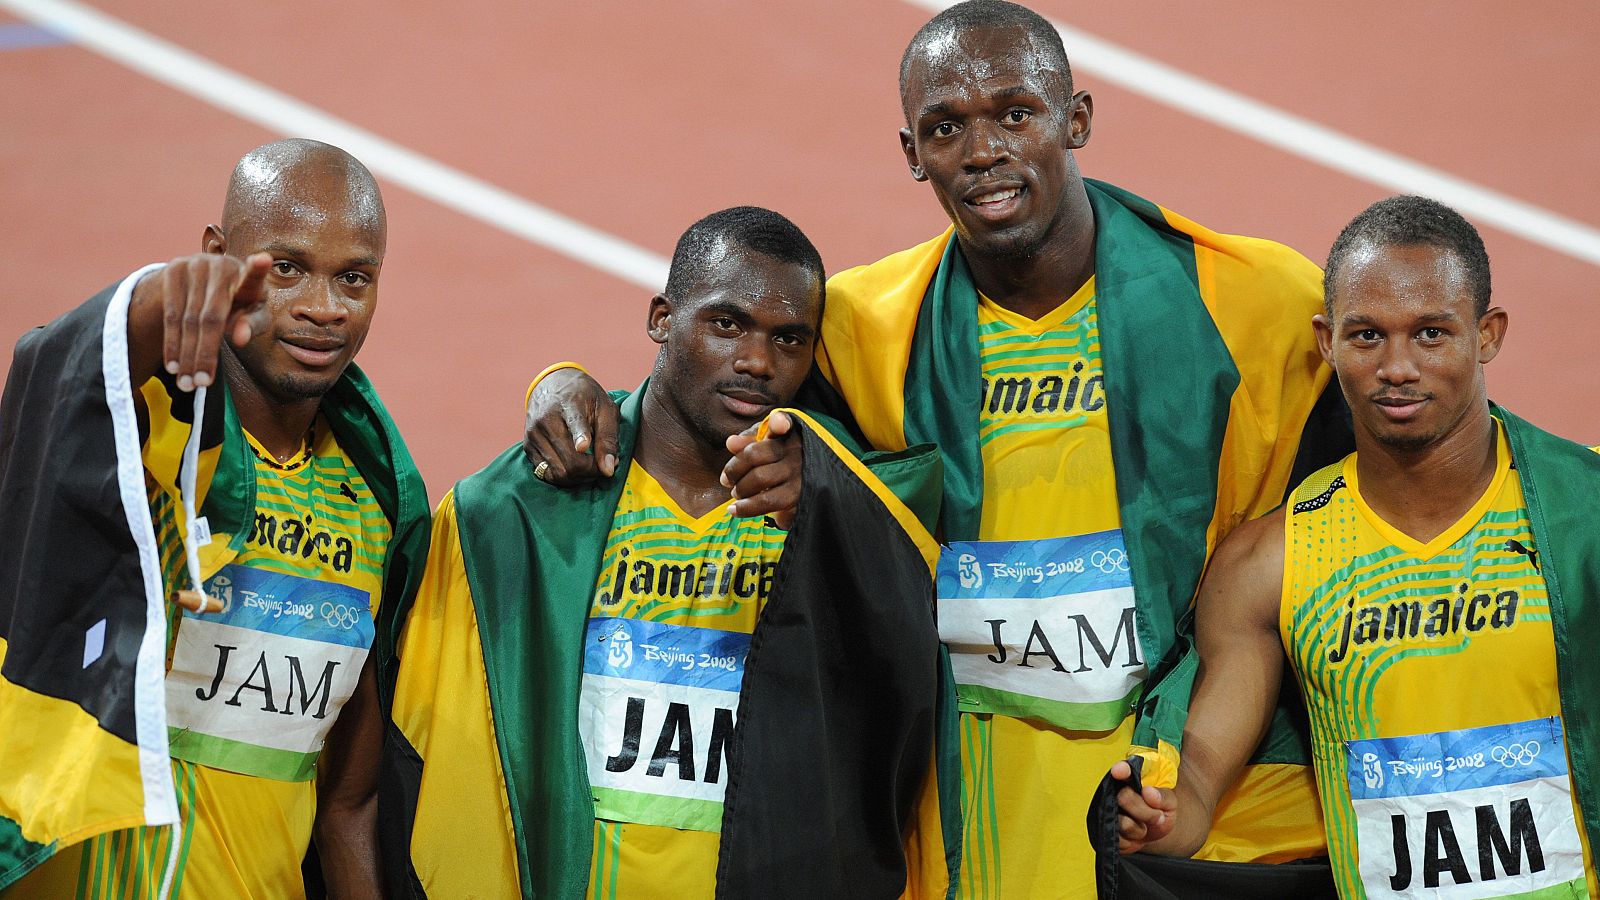 Los cuatro relevistas jamaicanos de Pekín 2008